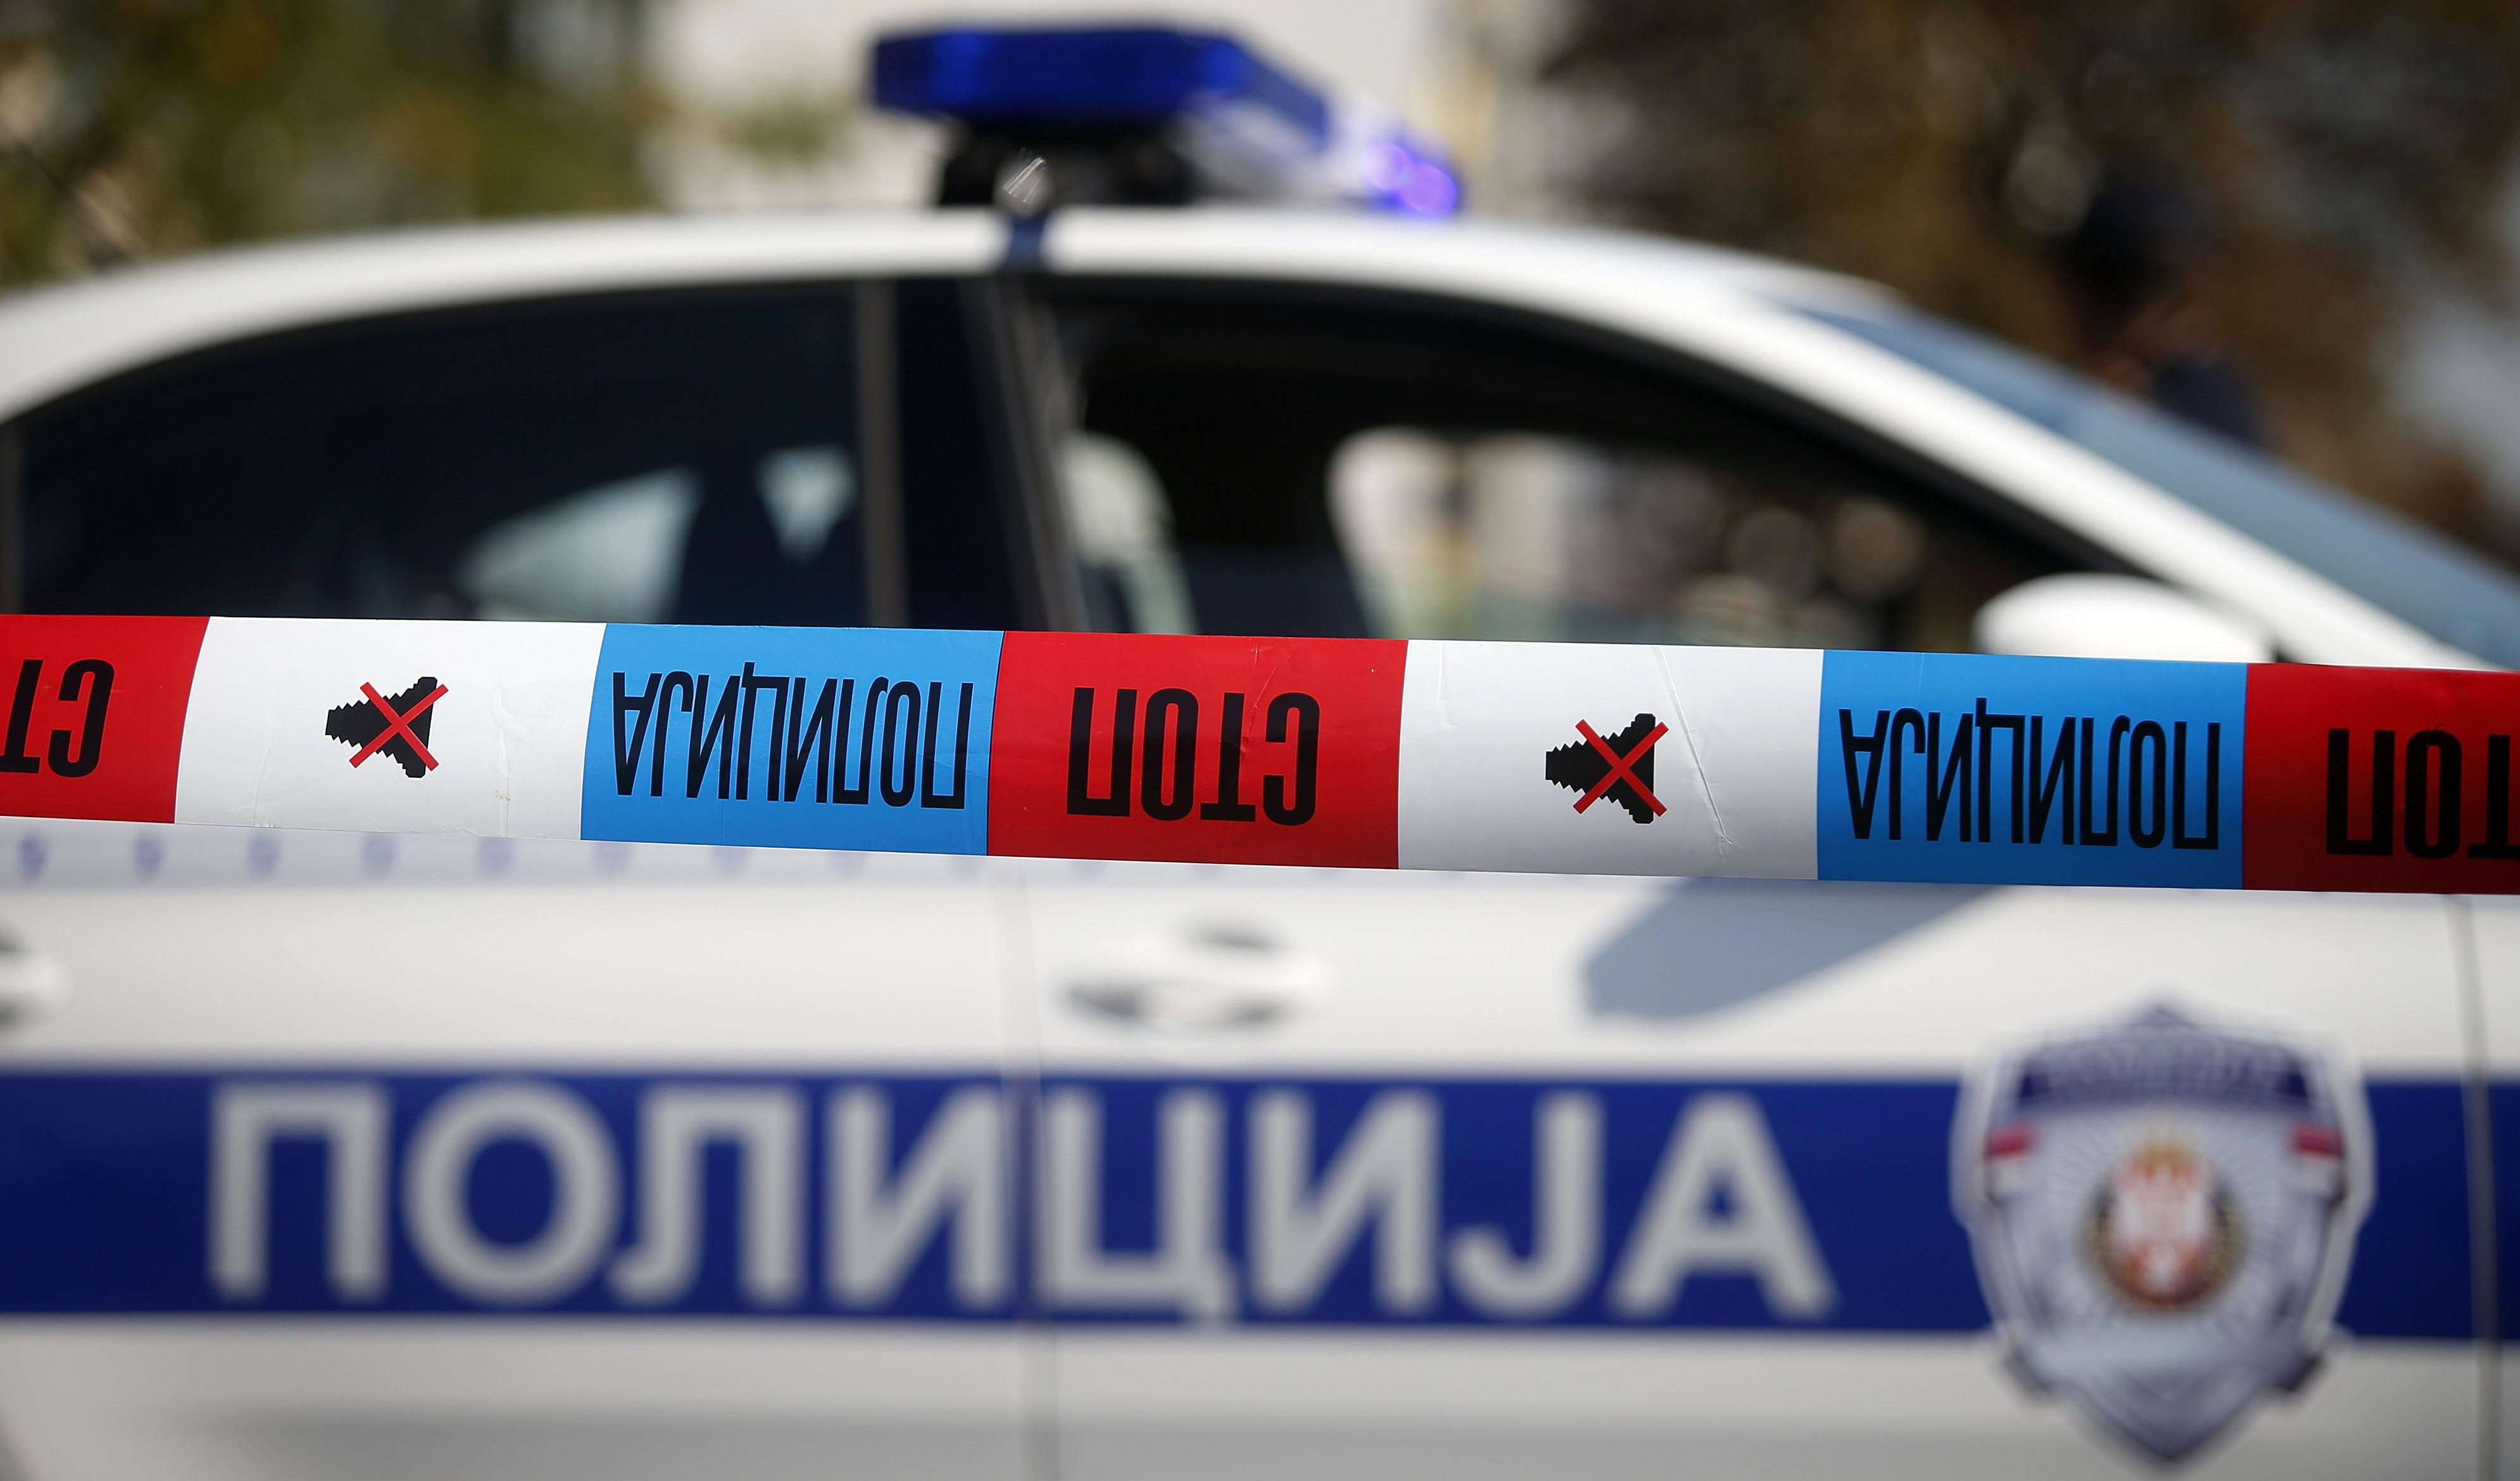 AUTOMOBIL NALETEO NA ŽENU U CENTRU BEOGRADA! Nesreća na uglu Dubrovačke i Skenderbegove